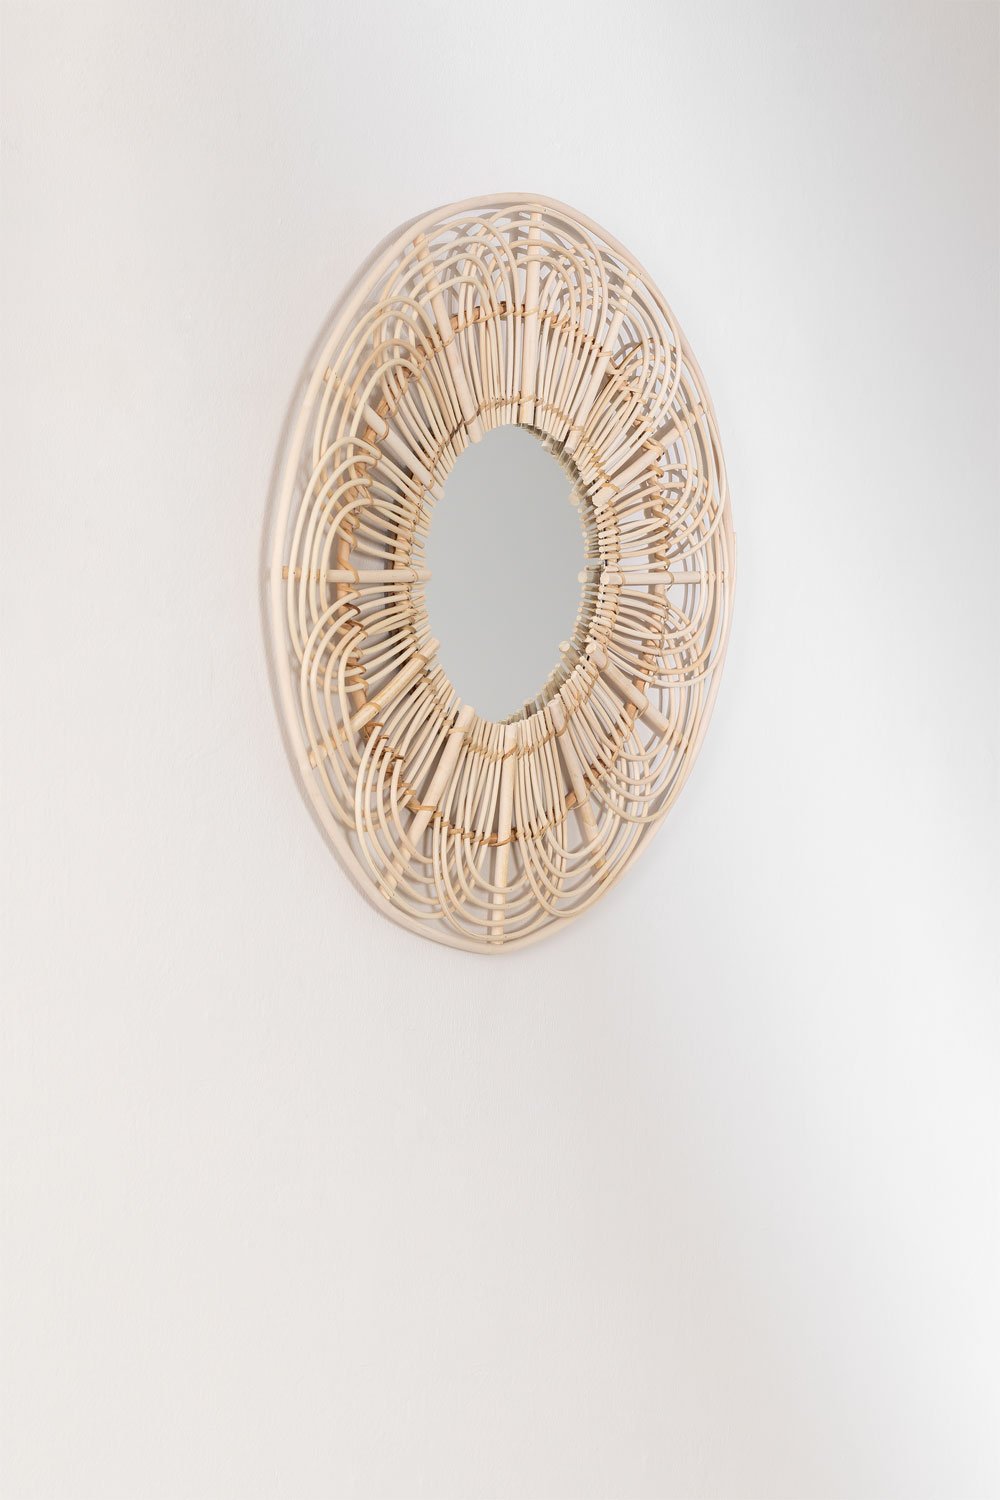 Miroir rond en rotin (Ø60 cm) Corent, image de la galerie 2